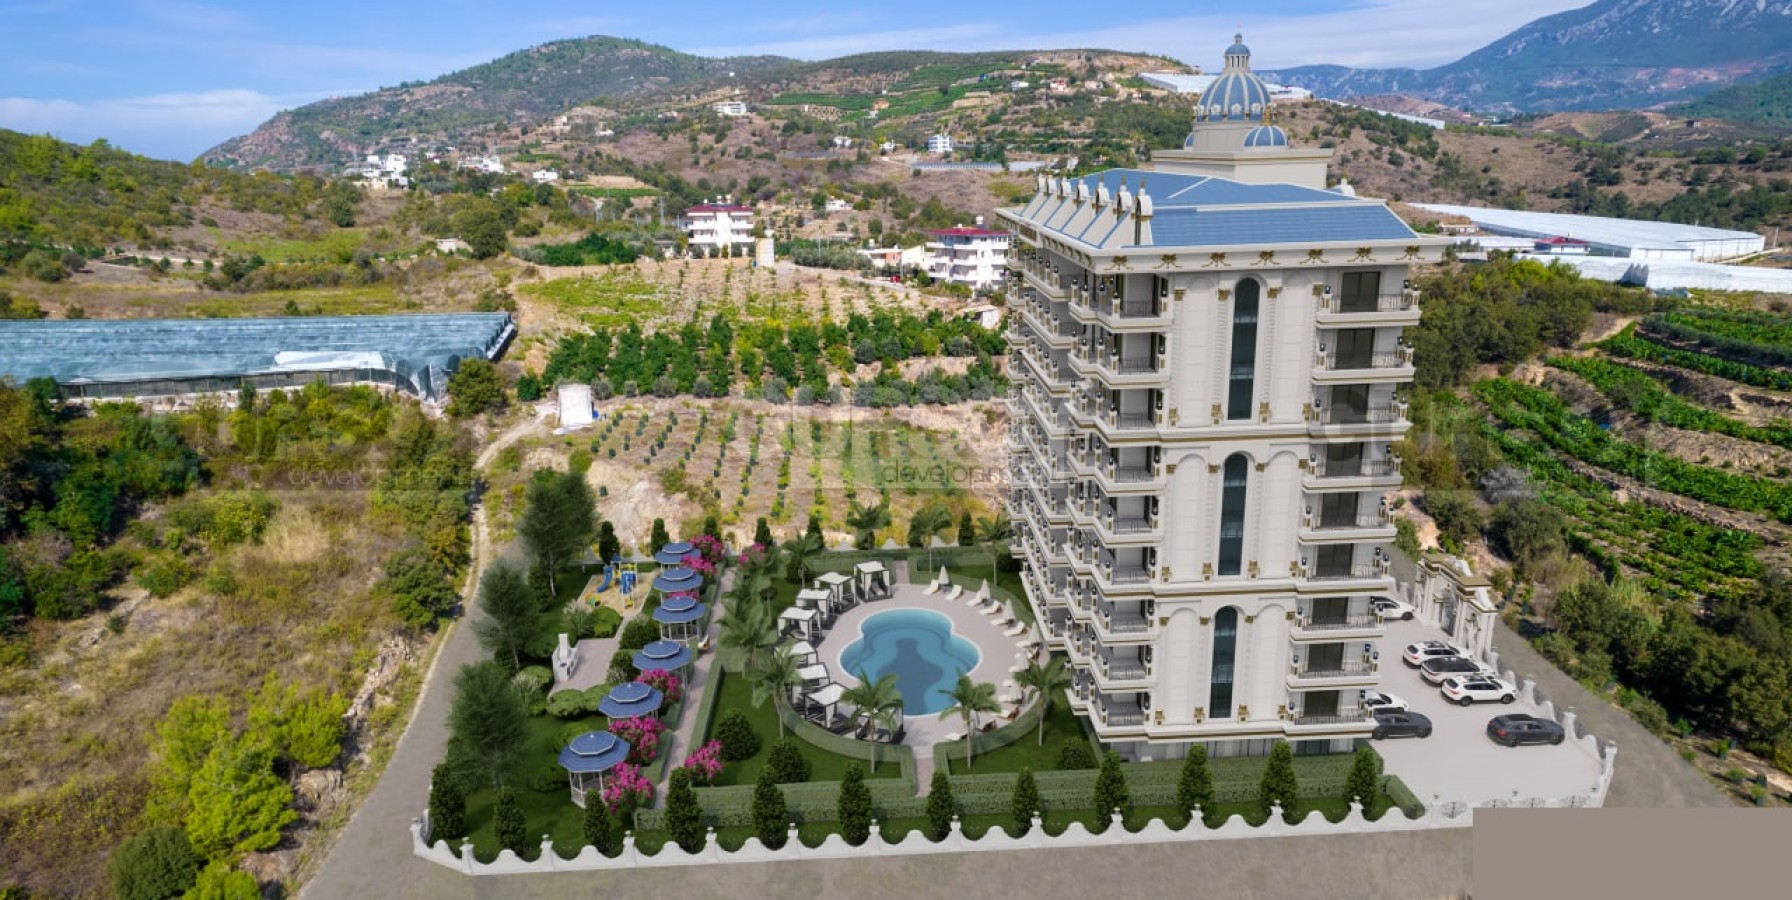 Горячее предложение - квартиры 1+1 в строящемся комплексе в Демирташе по очень выгодной цене, 60 м2 в Турции - фото 1